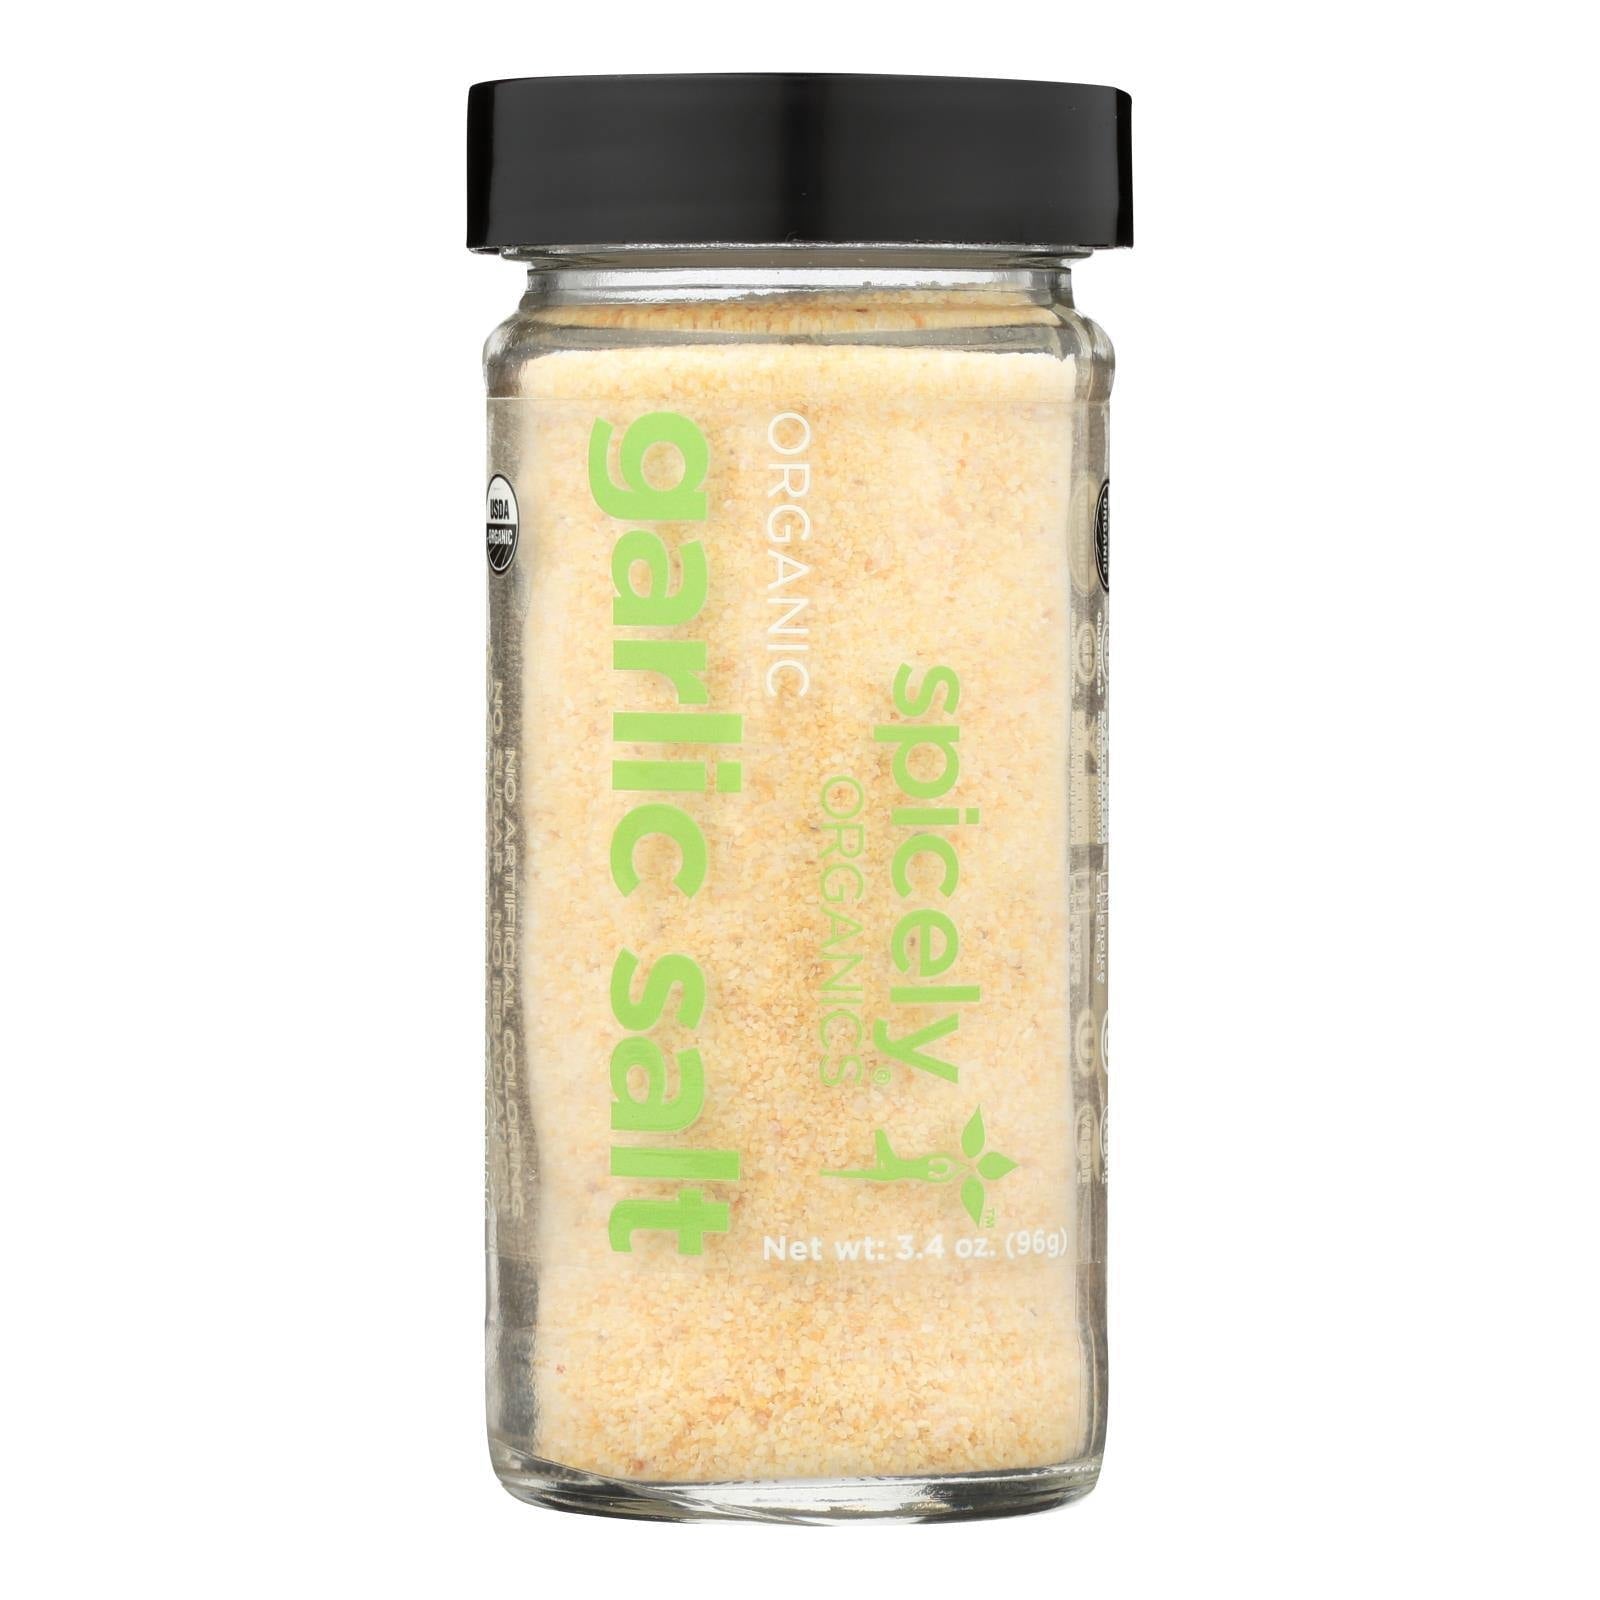 Spicely Organics Garlic Salt 3.4 Oz Jar